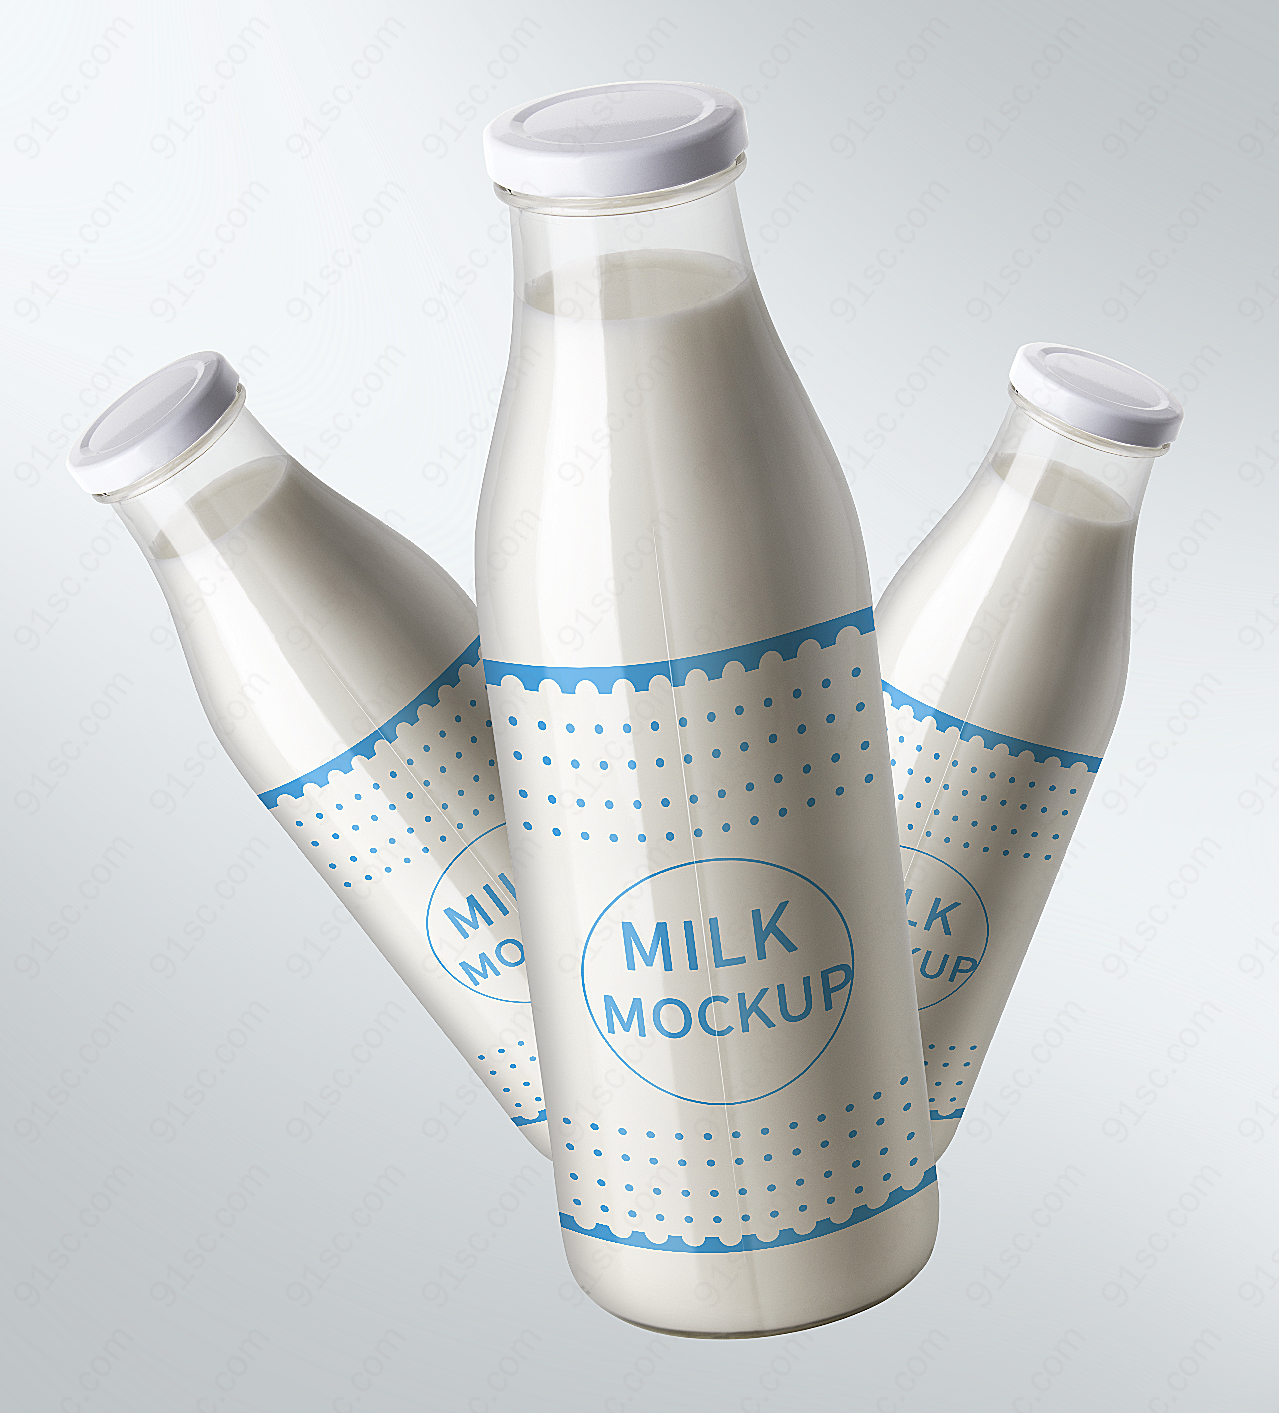 牛奶瓶包装样机包装设计